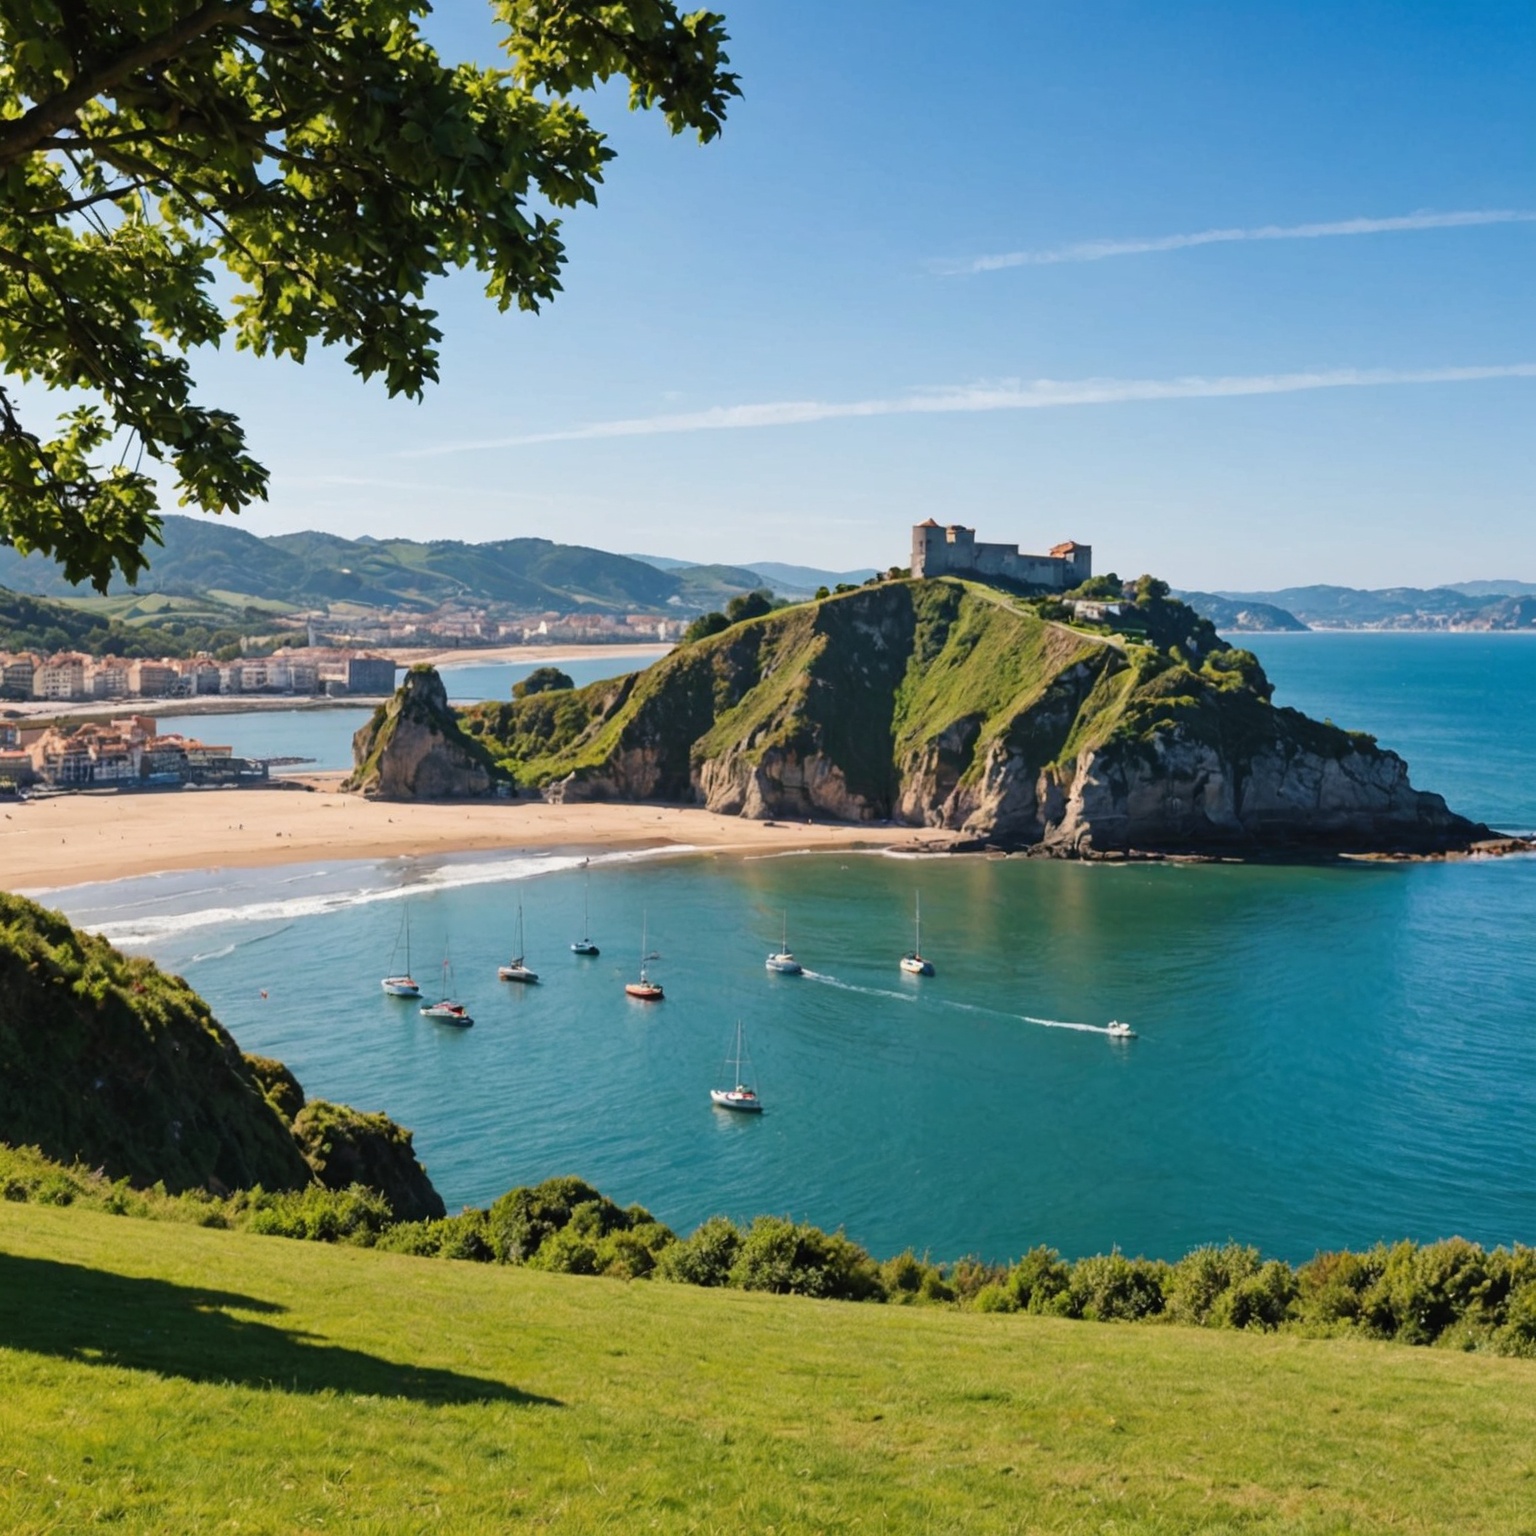 Vacances Idylliques au Pays Basque : Votre Guide Complet pour un Séjour en Camping en Bord de Mer à Hendaye